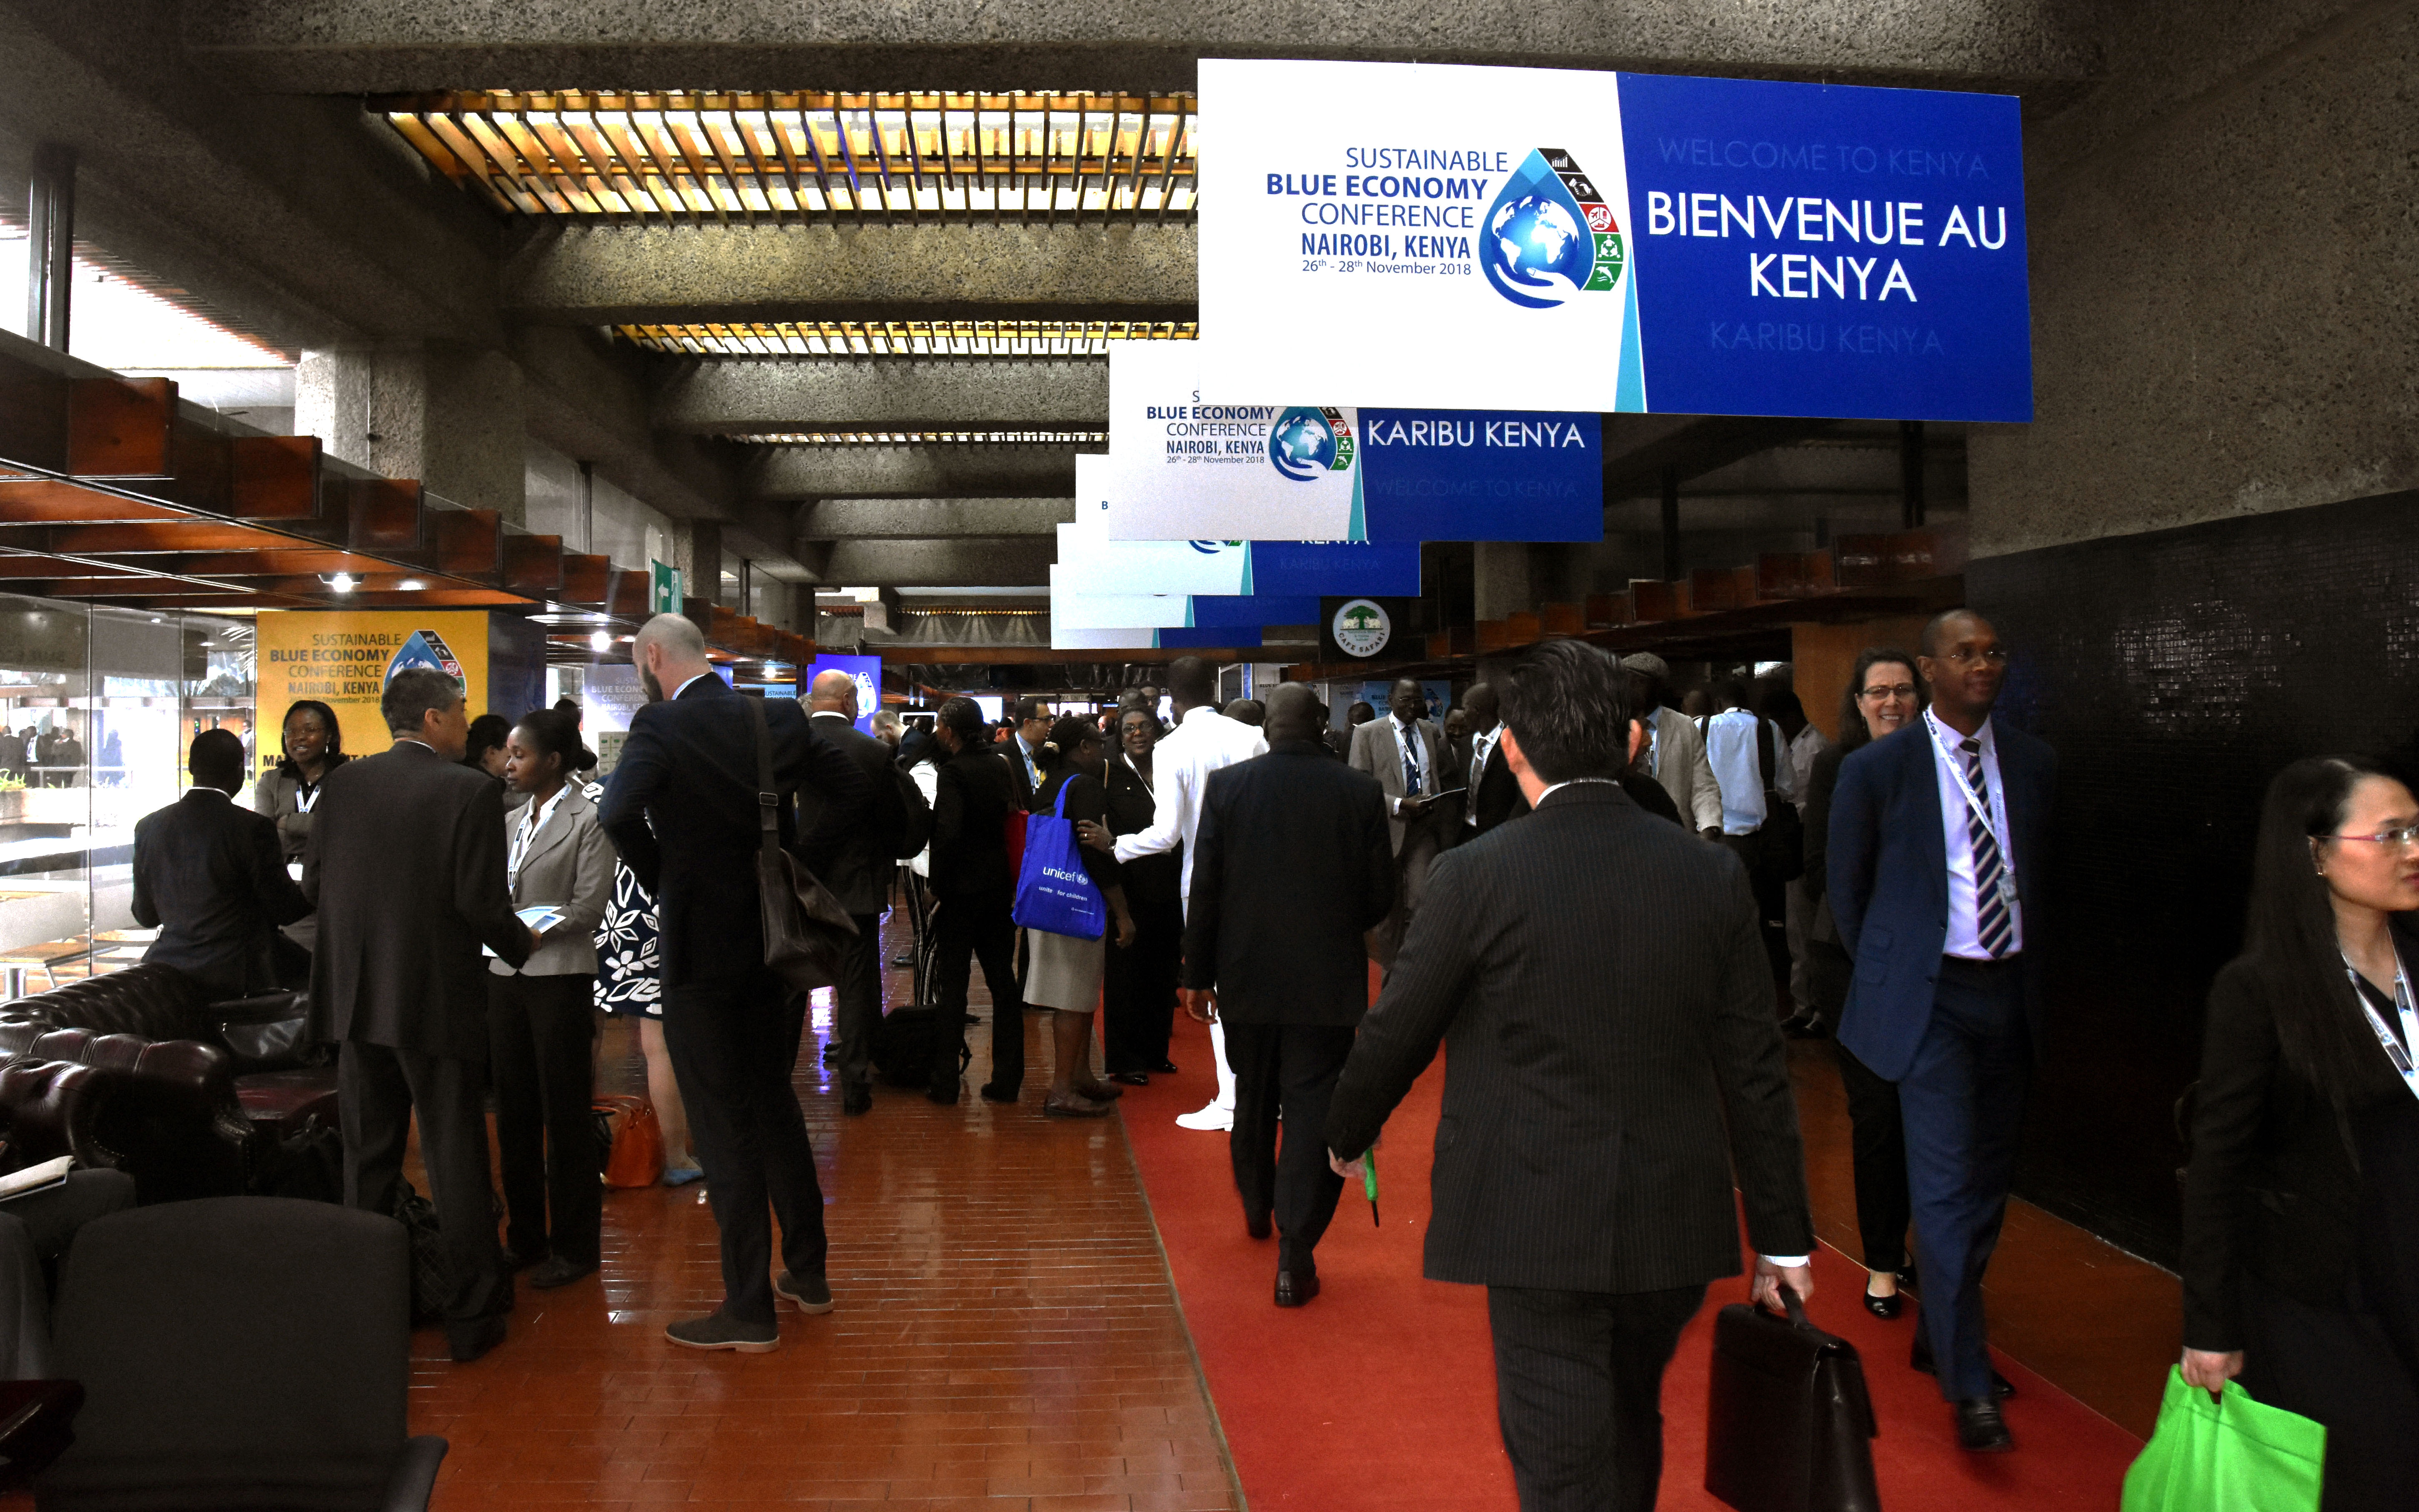 KENYA: La première conférence mondiale sur l’économie bleue durable s’est ouverte ce matin à Nairobi